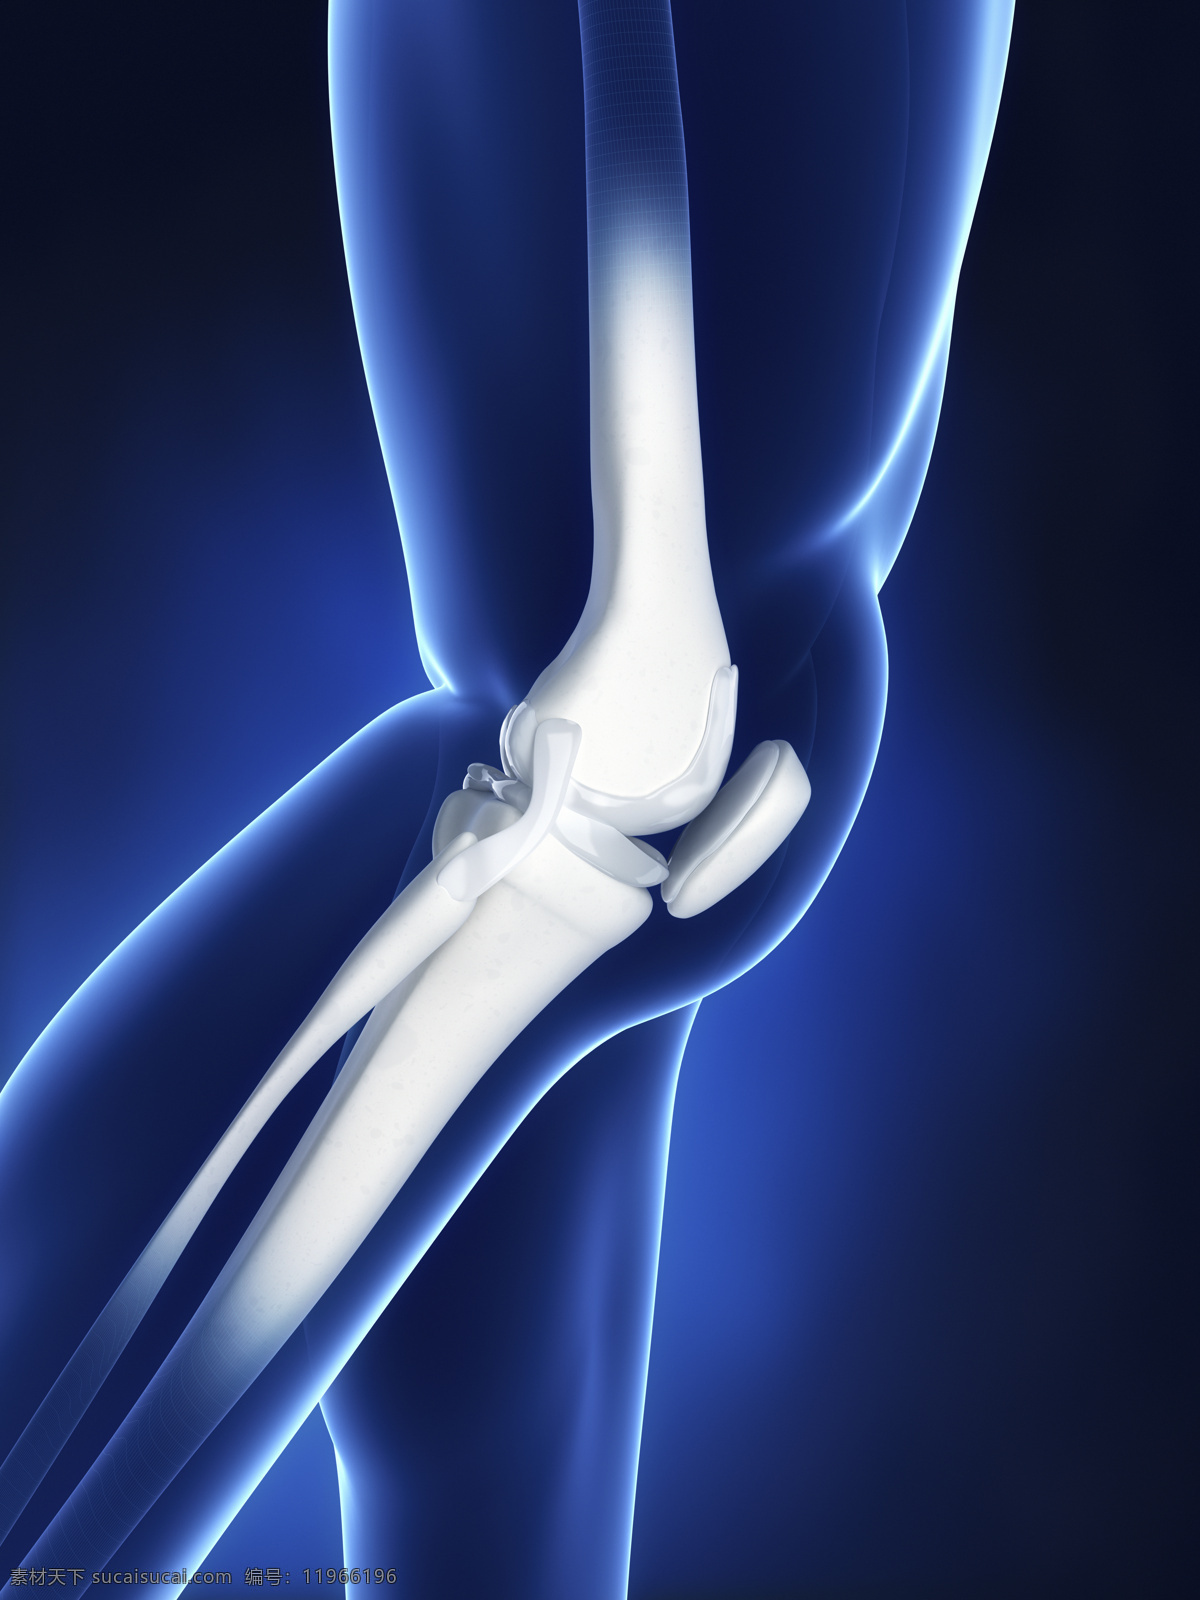 人体 膝盖 关节 骨骼 膝关节 膝盖关节 关节炎 骨骼ct 人体器官 医疗科学 医学 人体器官图 人物图片